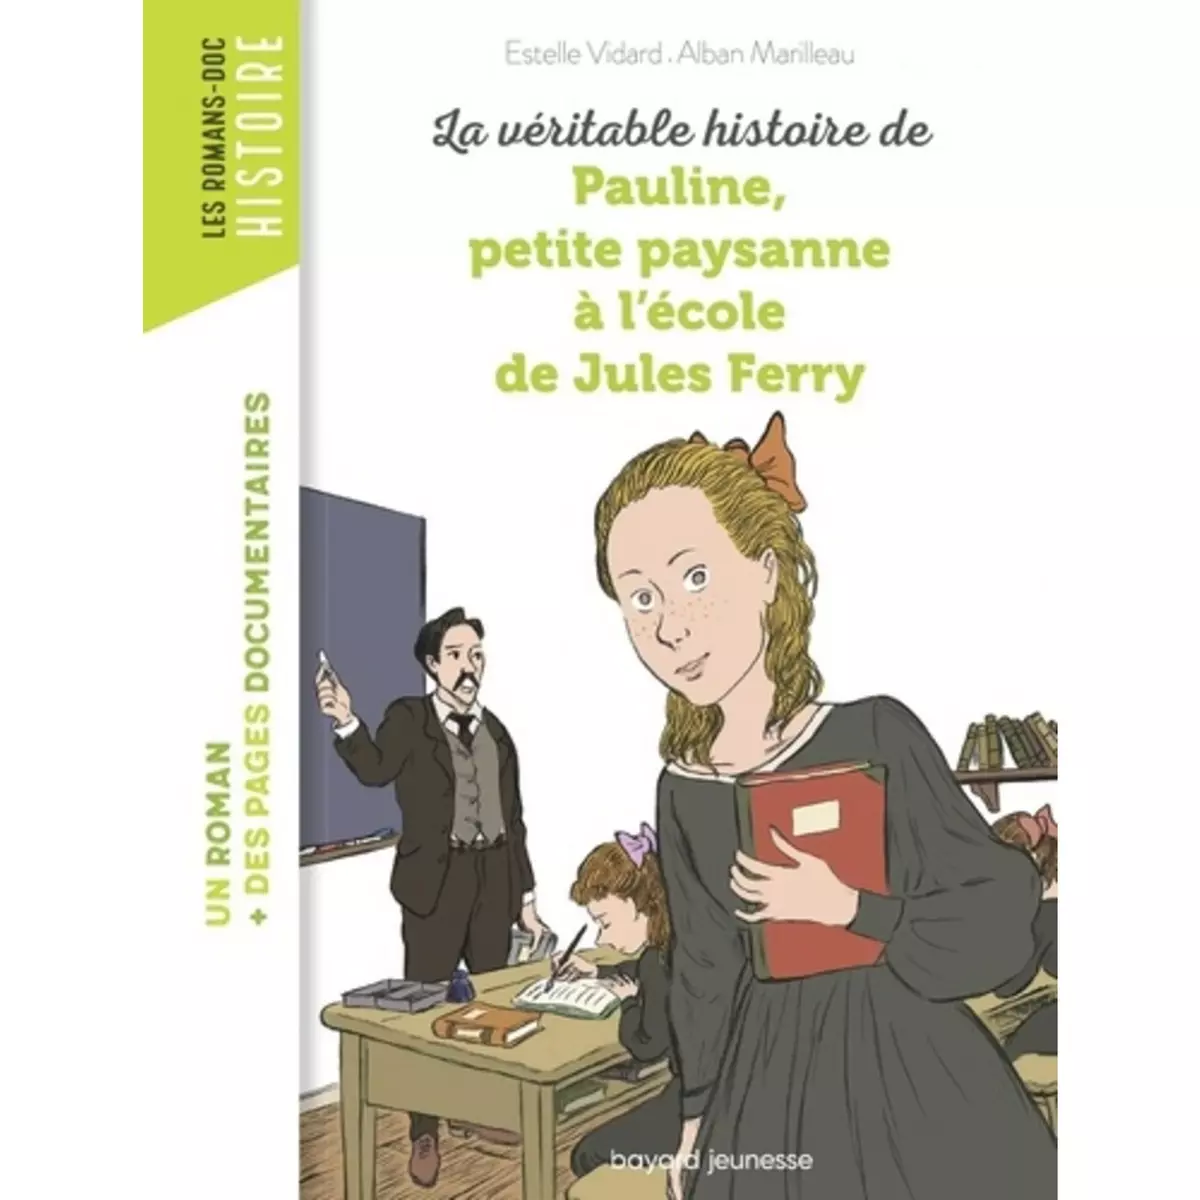  LA VERITABLE HISTOIRE DE PAULINE, PETITE PAYSANNE A L'ECOLE DE JULES FERRY, Marilleau Alban